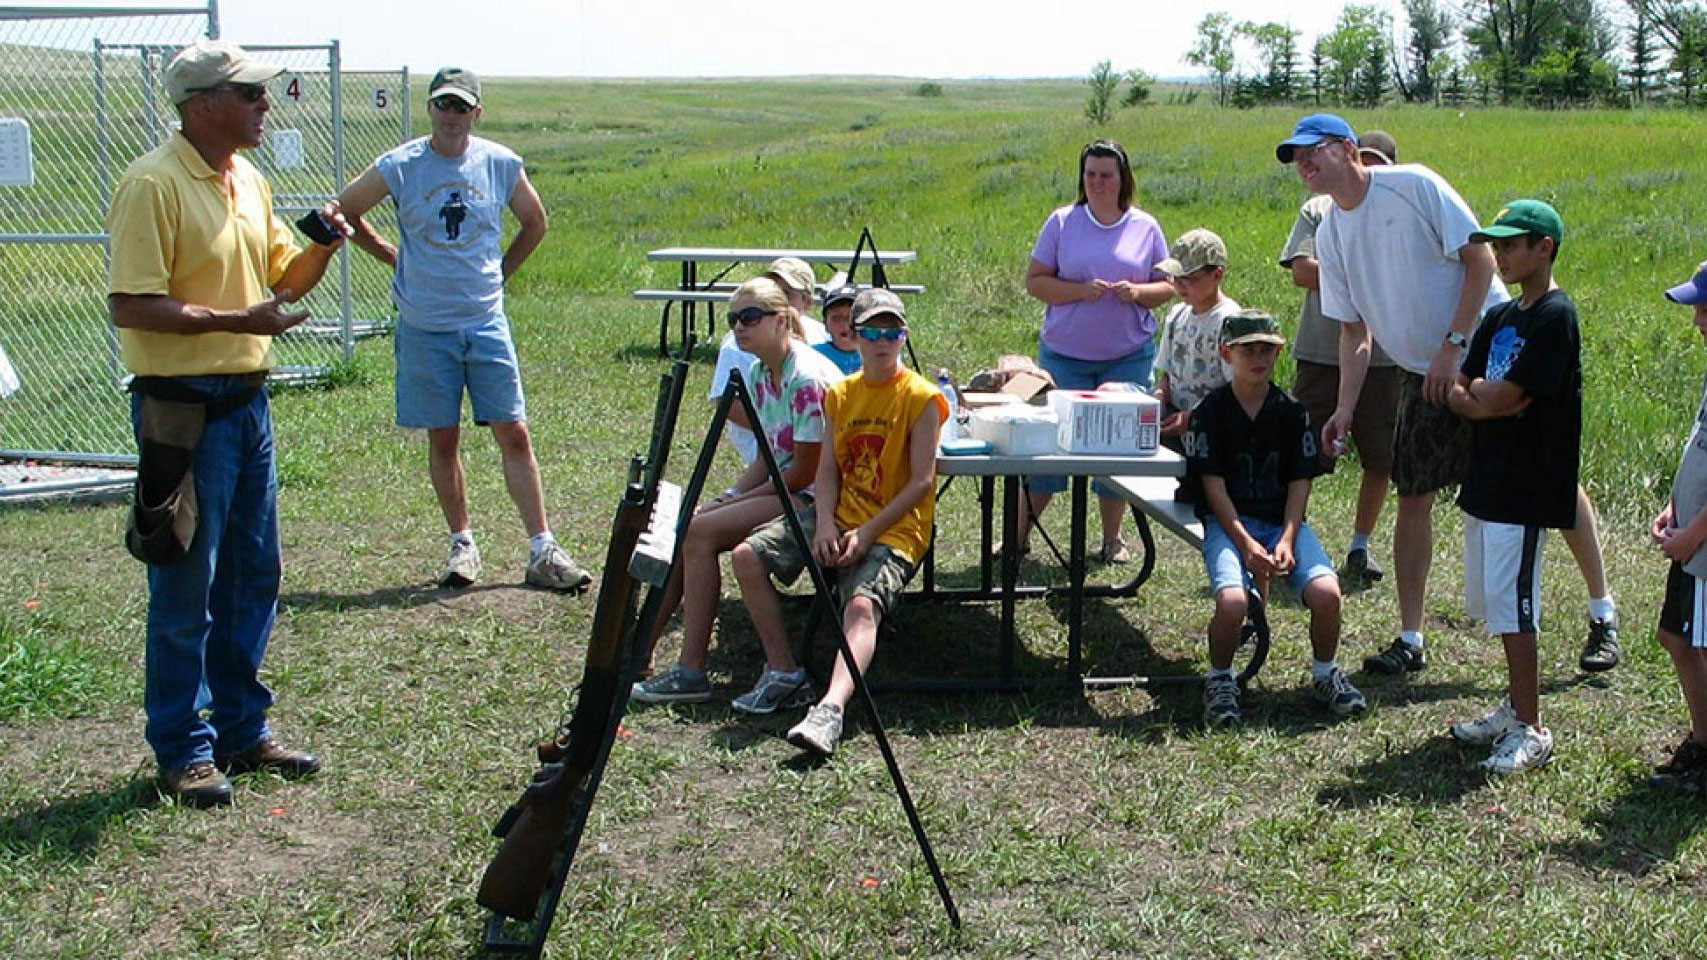 Students at shooting range